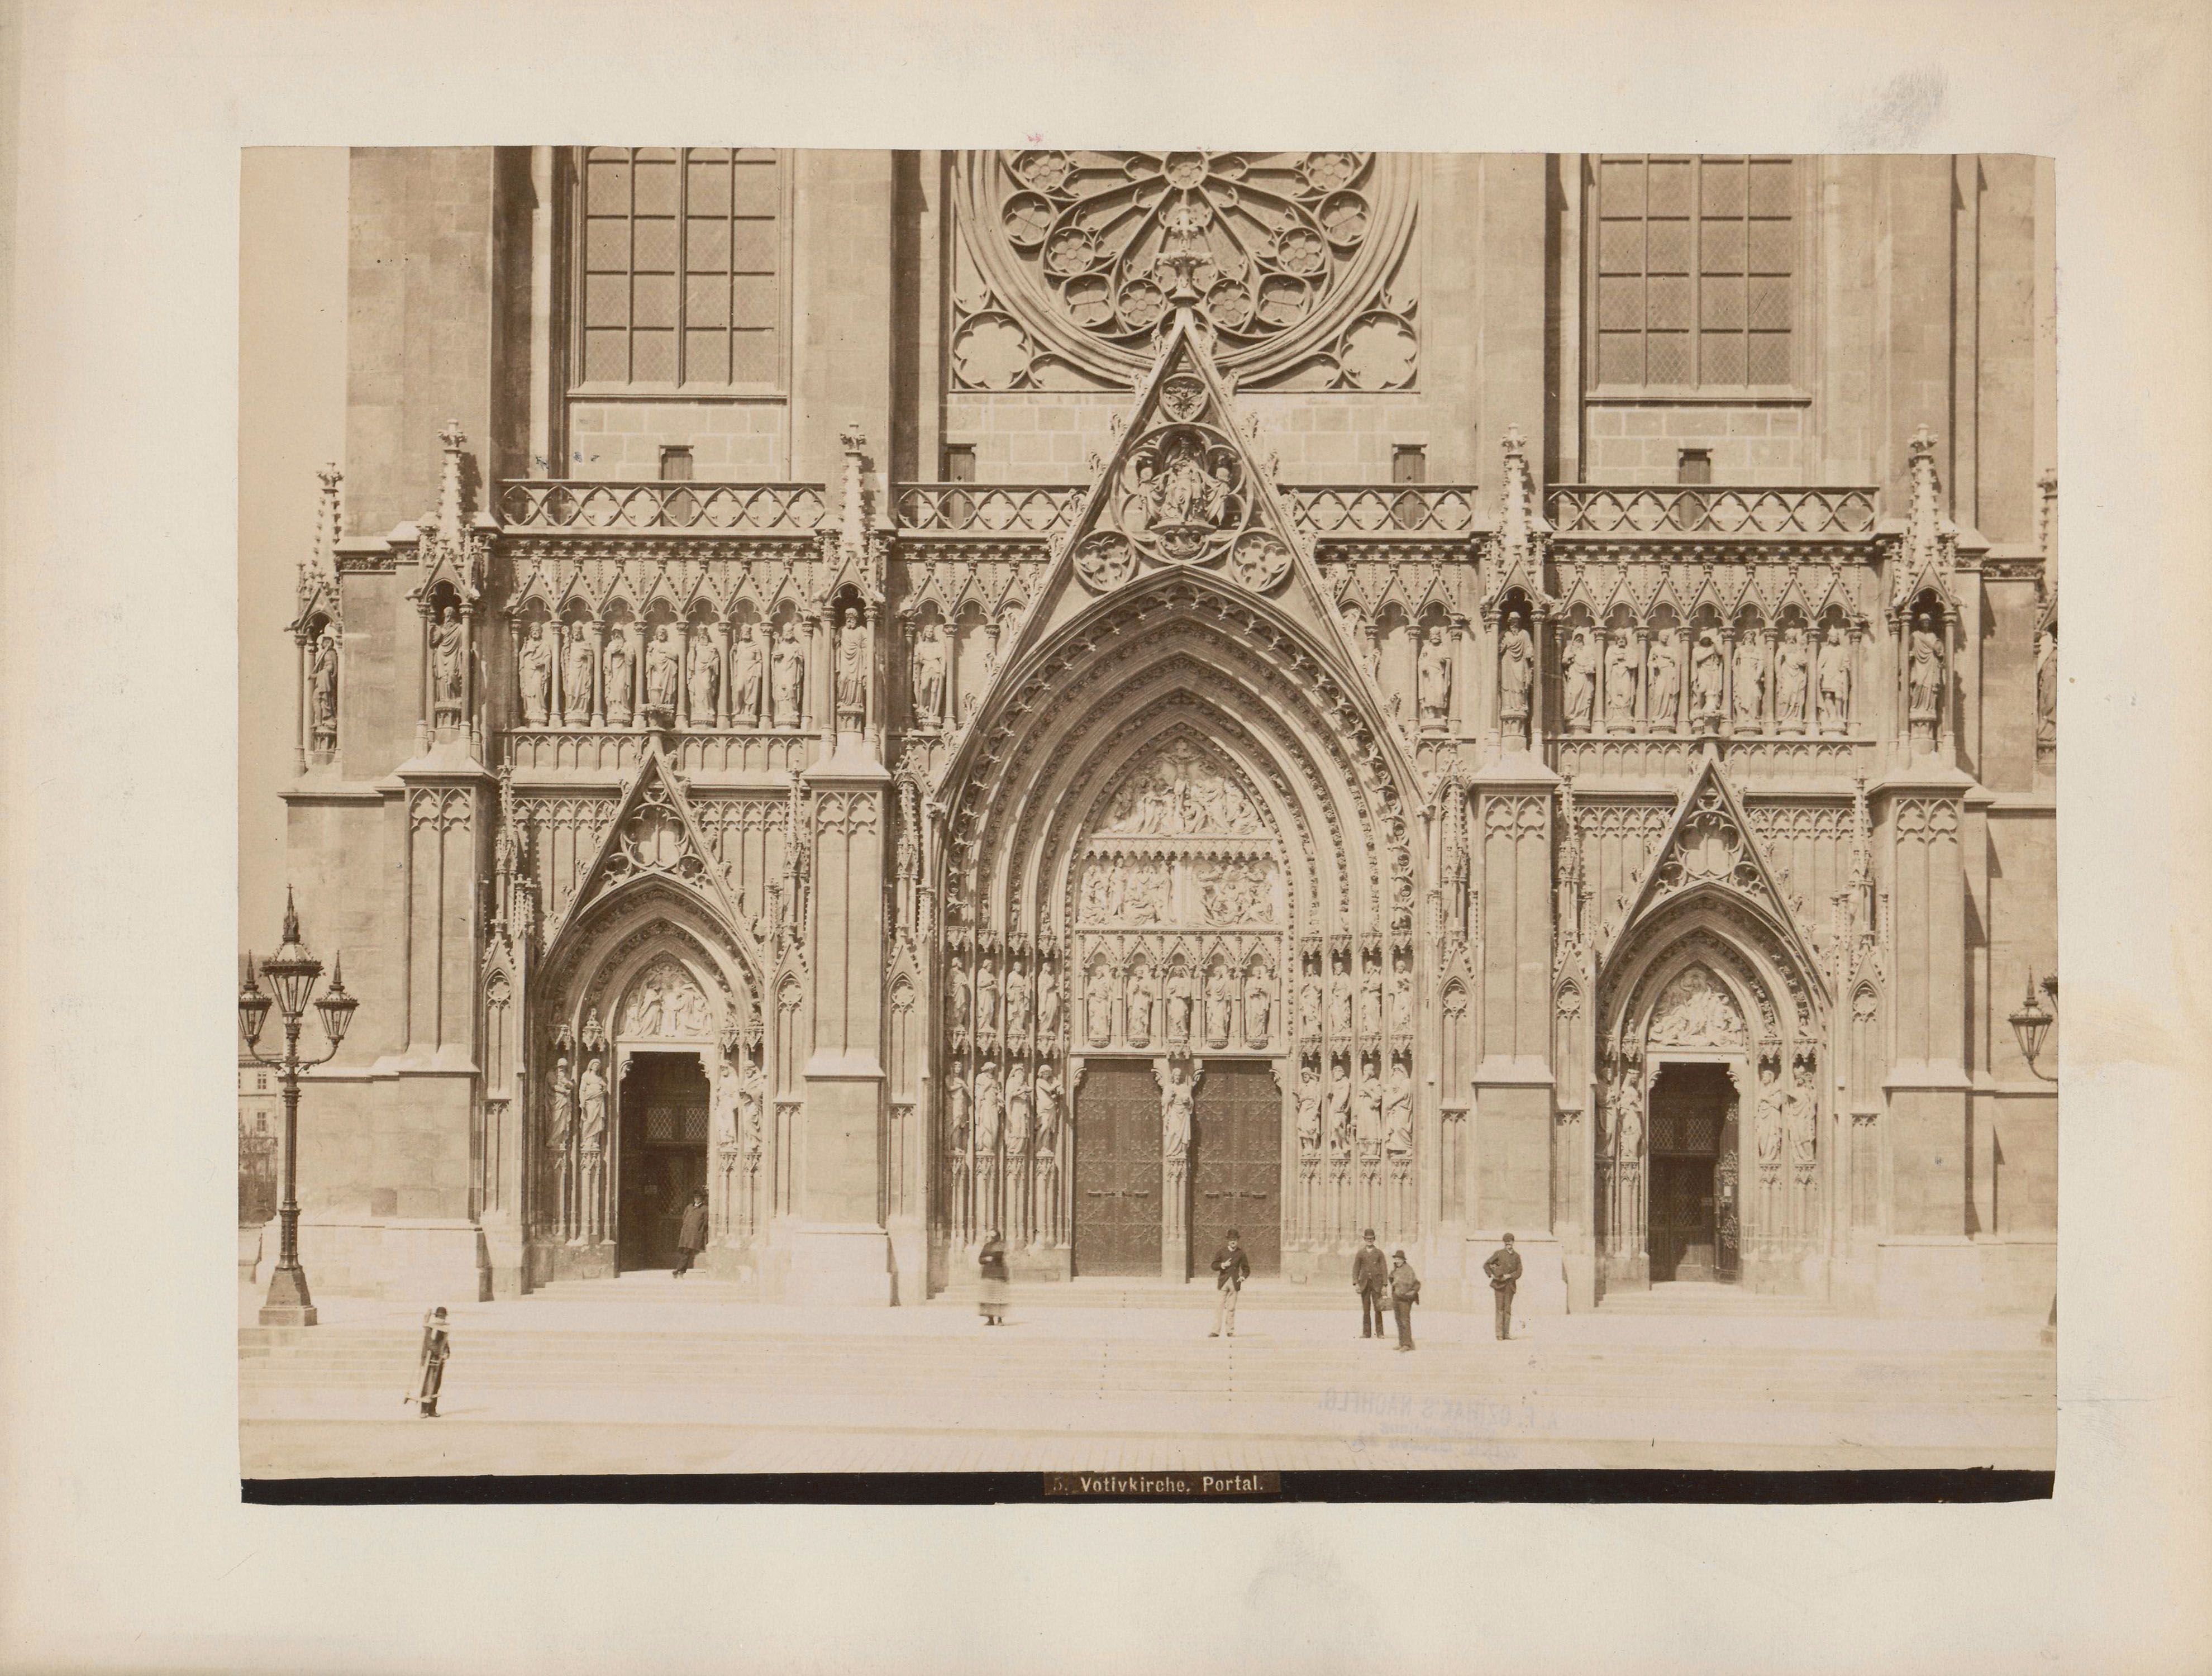 Fotografie (Albuminabzug auf Karton), Votivkirche, Wien, Inv.-Nr. 5573, 25 x 32,5 cm